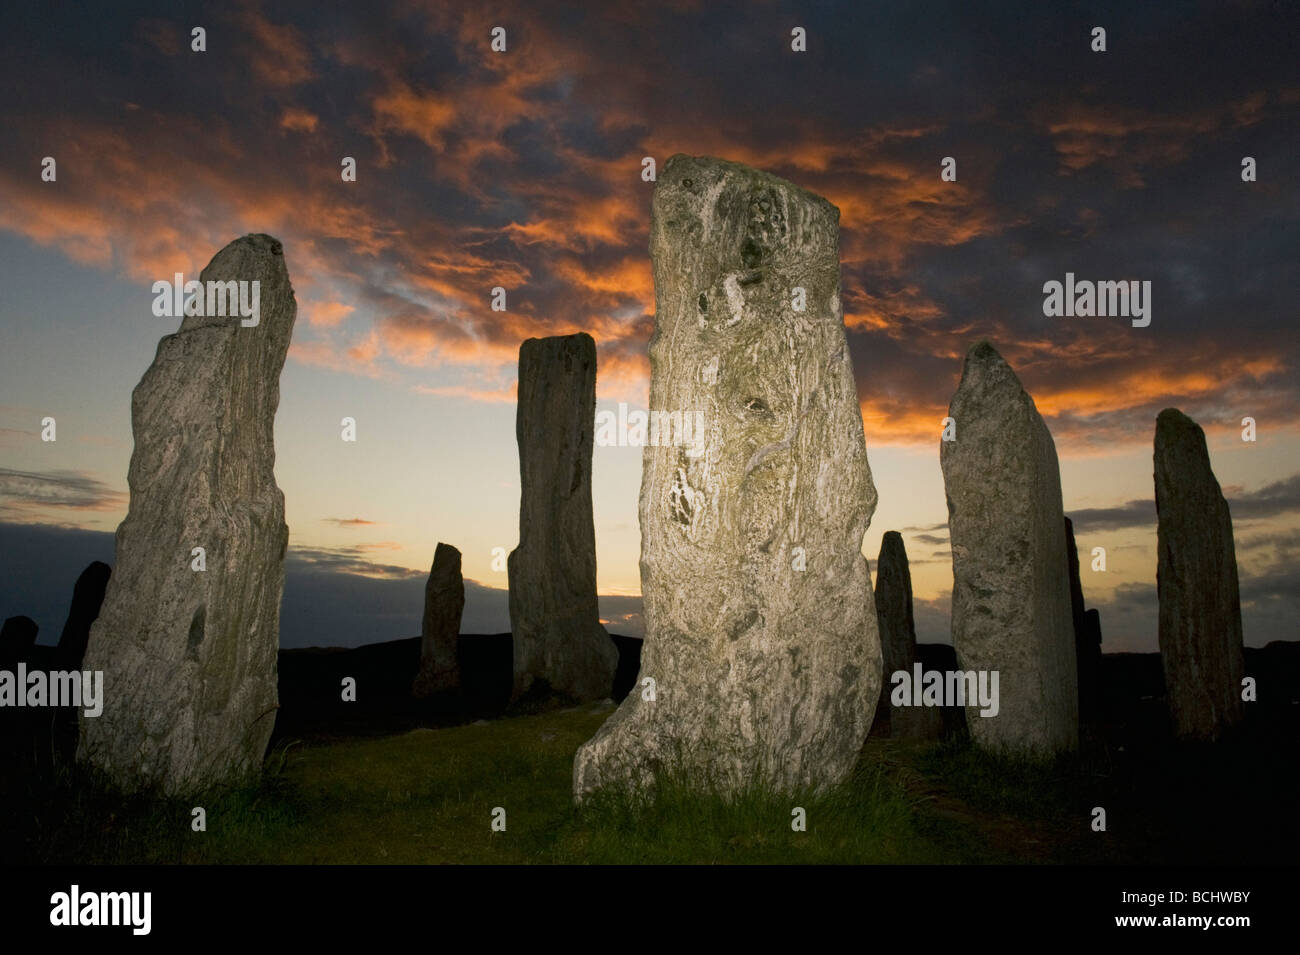 Le cercle de pierres néolithiques, Callanish Standing Stones, Coucher du soleil, le solstice d'été, à l'île de Lewis, Hébrides extérieures, en Écosse Banque D'Images